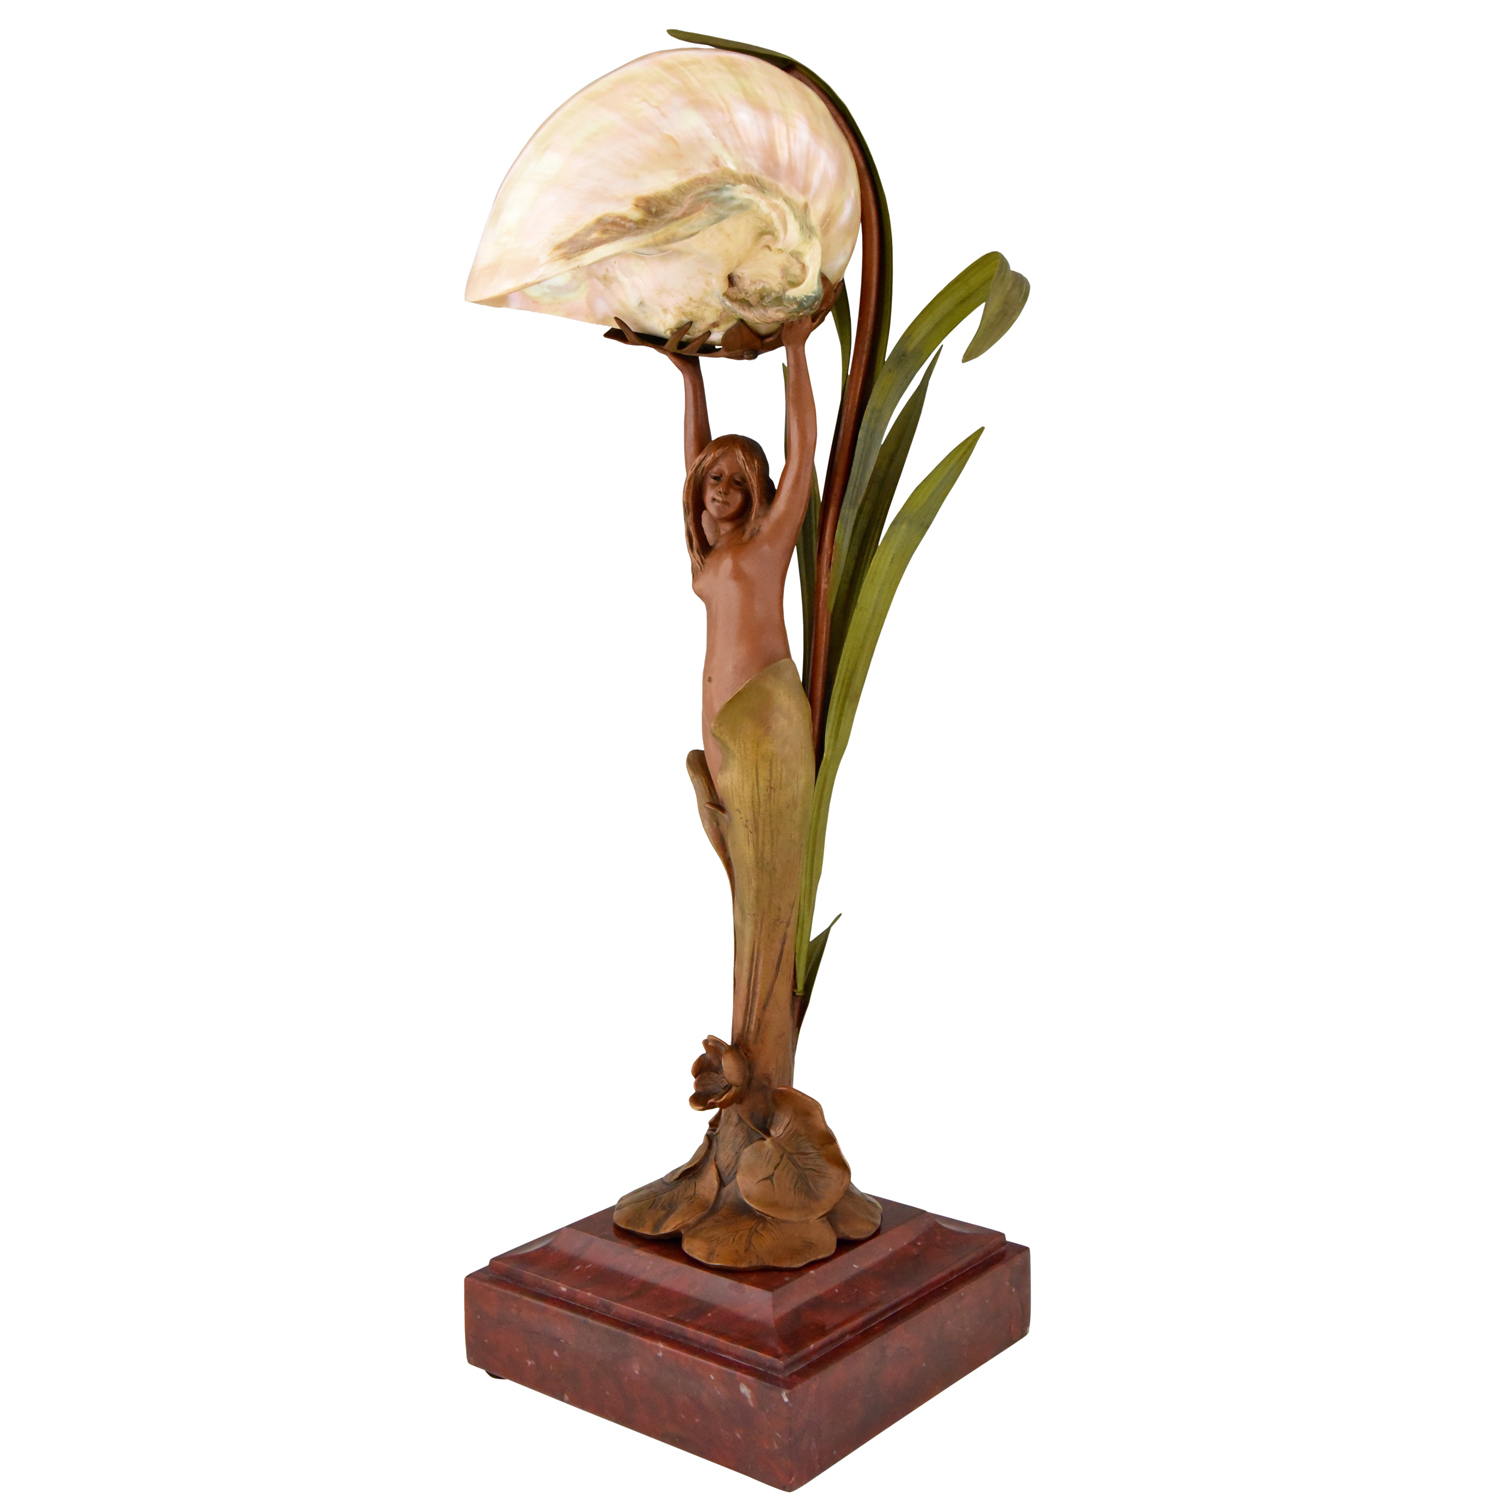 Art Nouveau lamp vrouwelijk naakt, schelp en balderen.